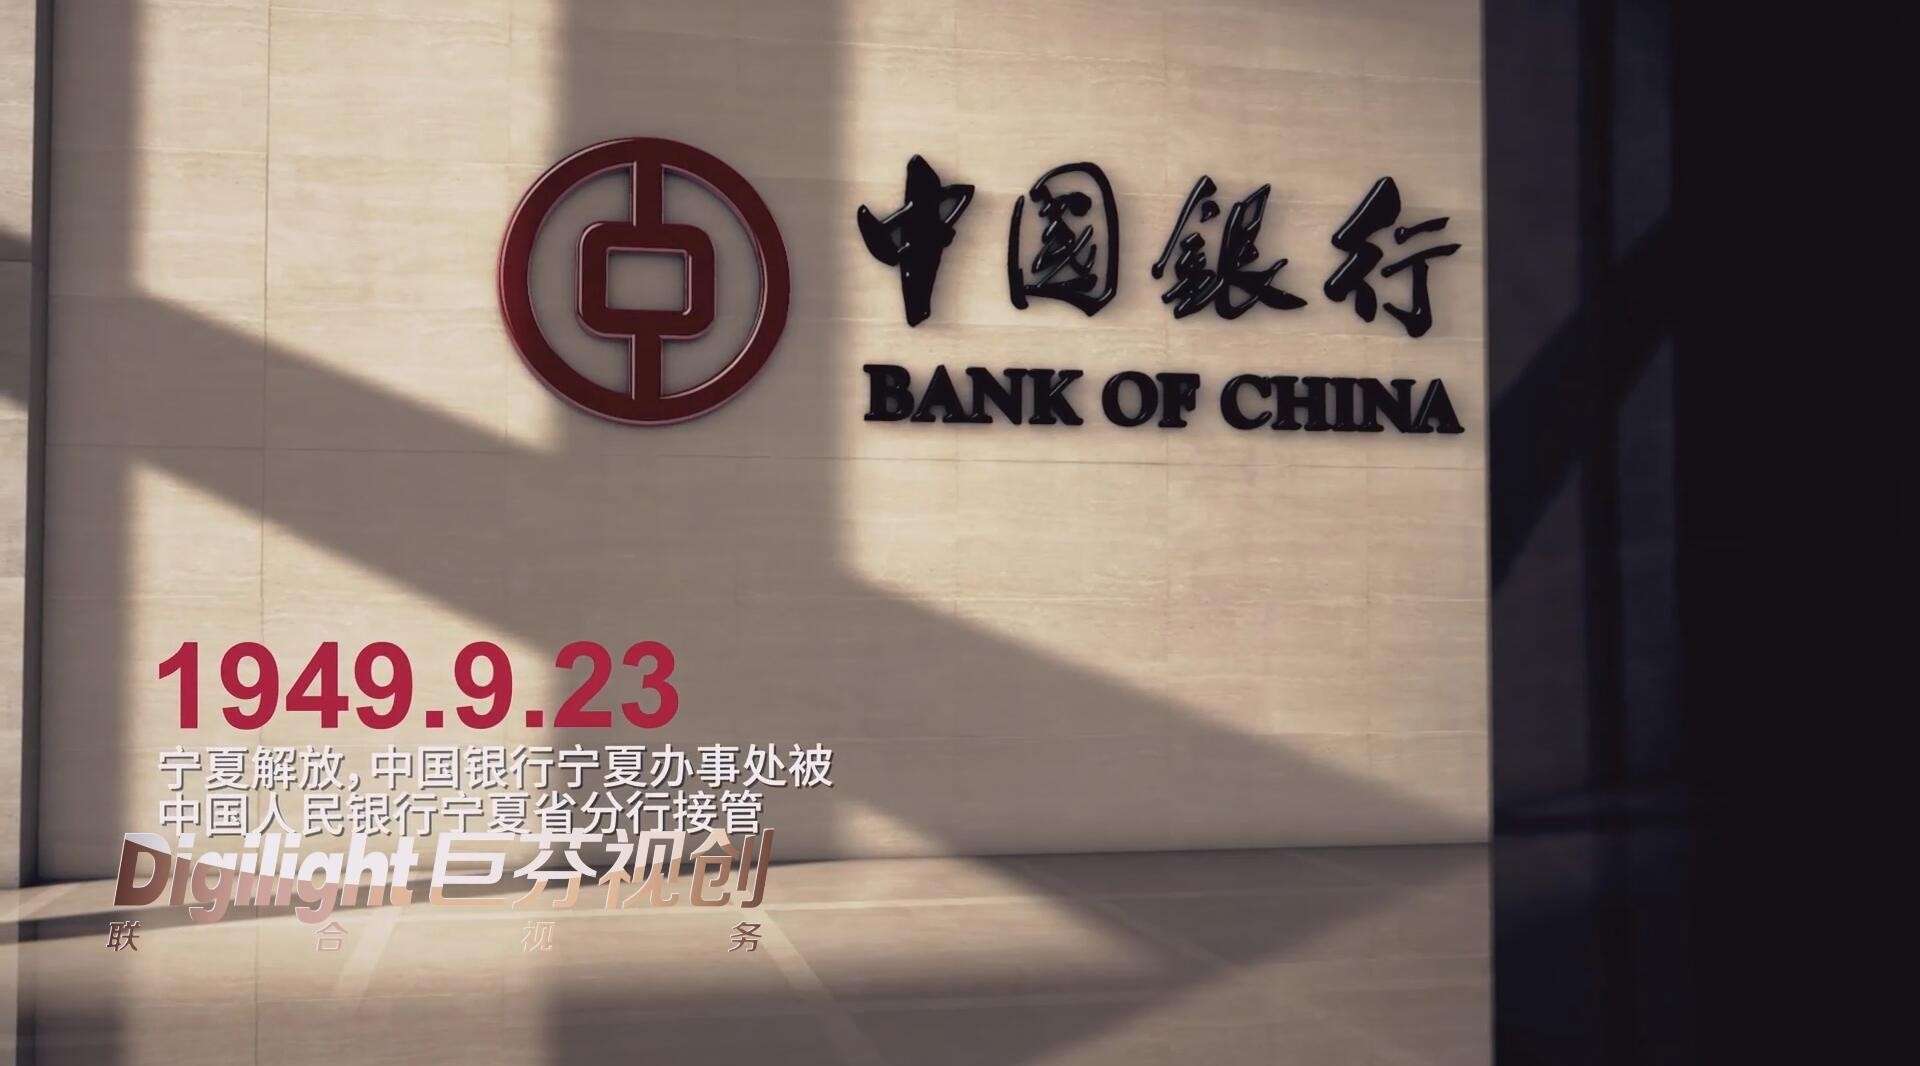 中国银行宁夏分行成立四十周年《砥砺四十载，奋进新时代》